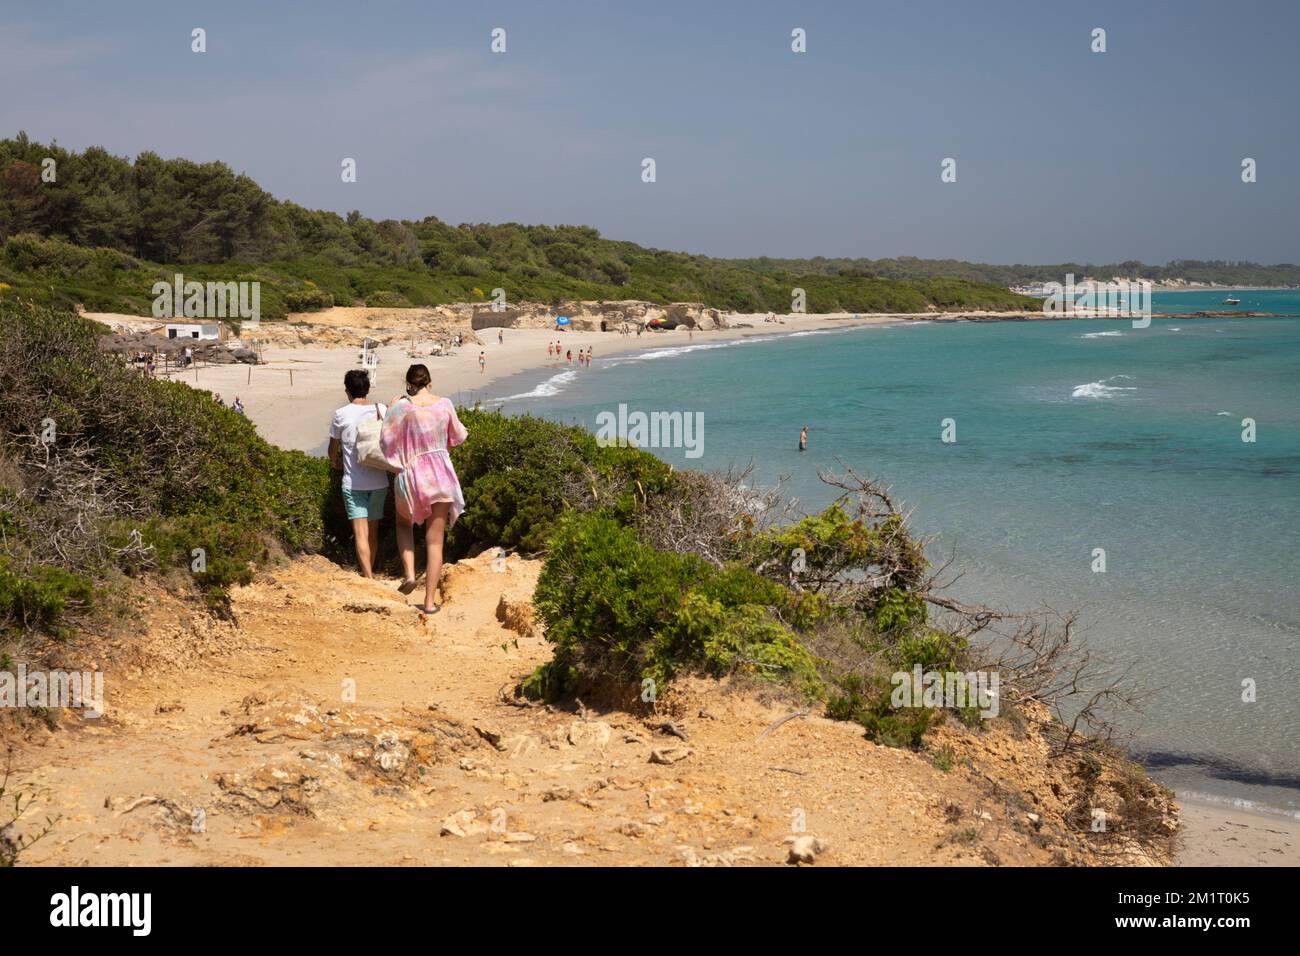 Plage de Baia dei Turchi et eaux turquoise de la mer Adriatique en été, près d'Otrante, province de Lecce, Puglia, Italie, Europe Banque D'Images